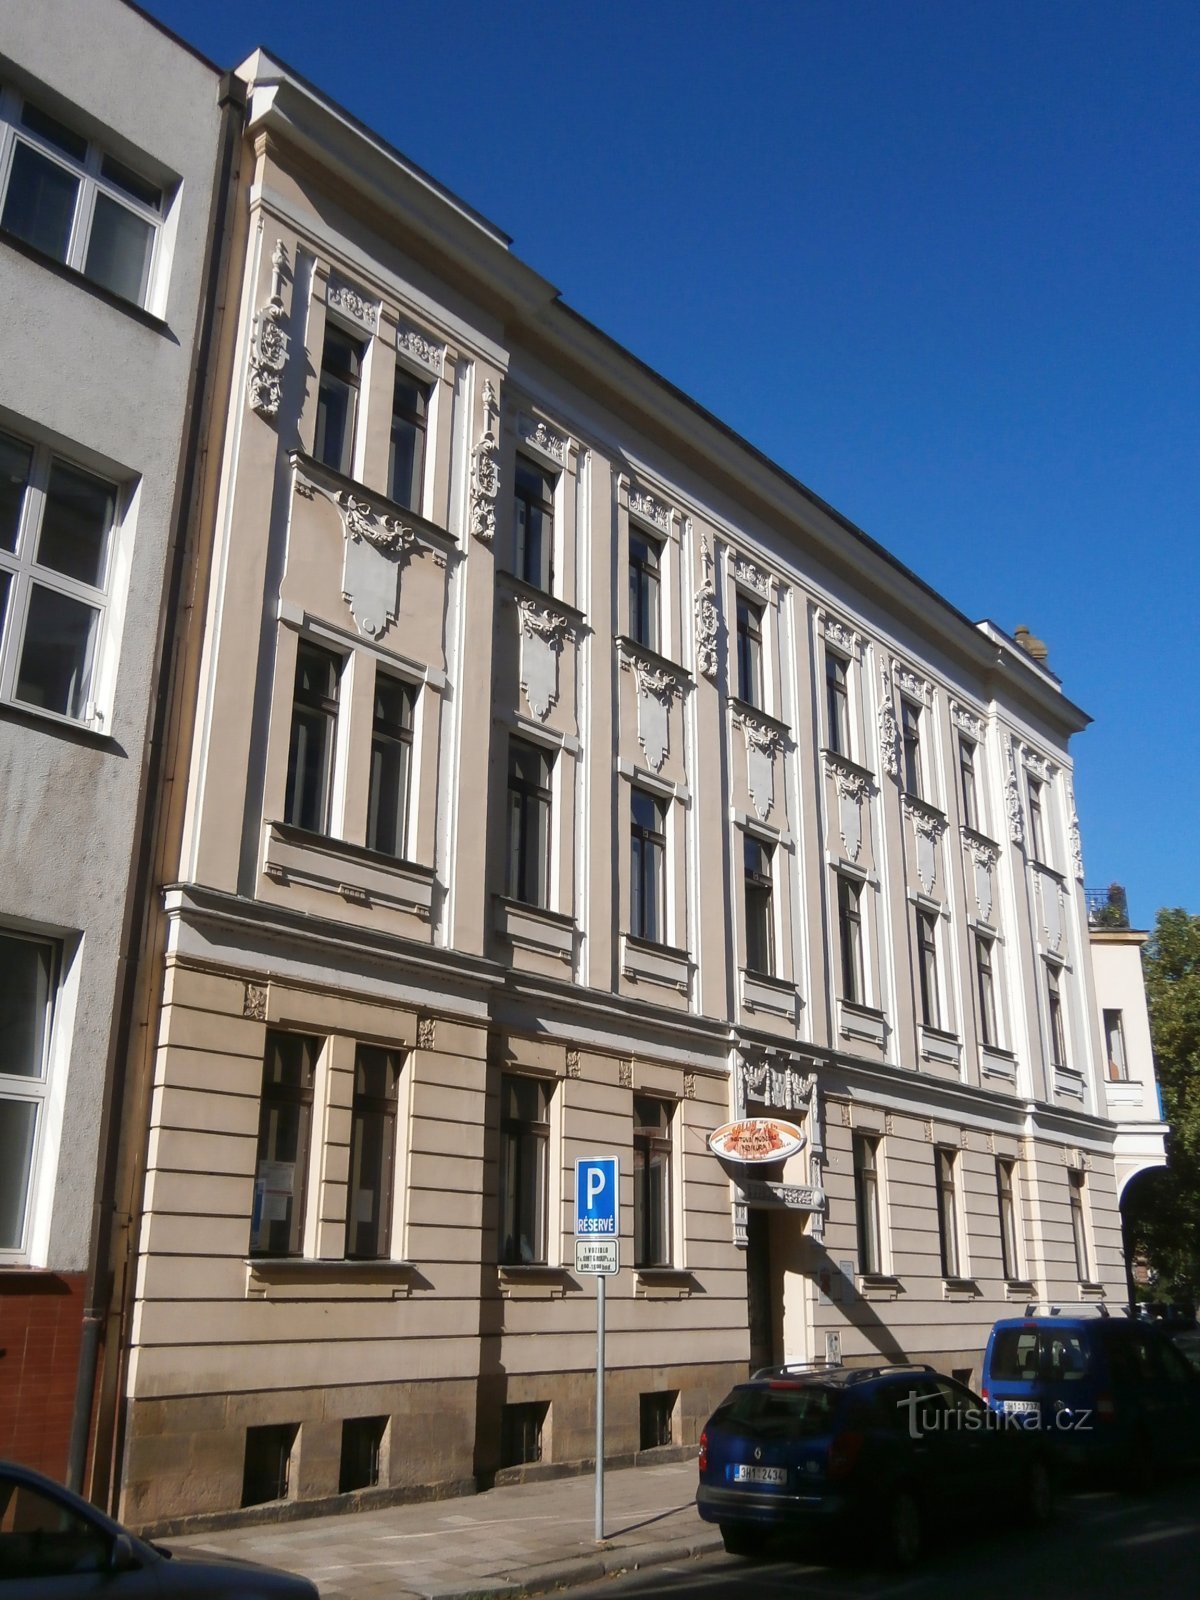 Chmelova nro 357 (Hradec Králové)